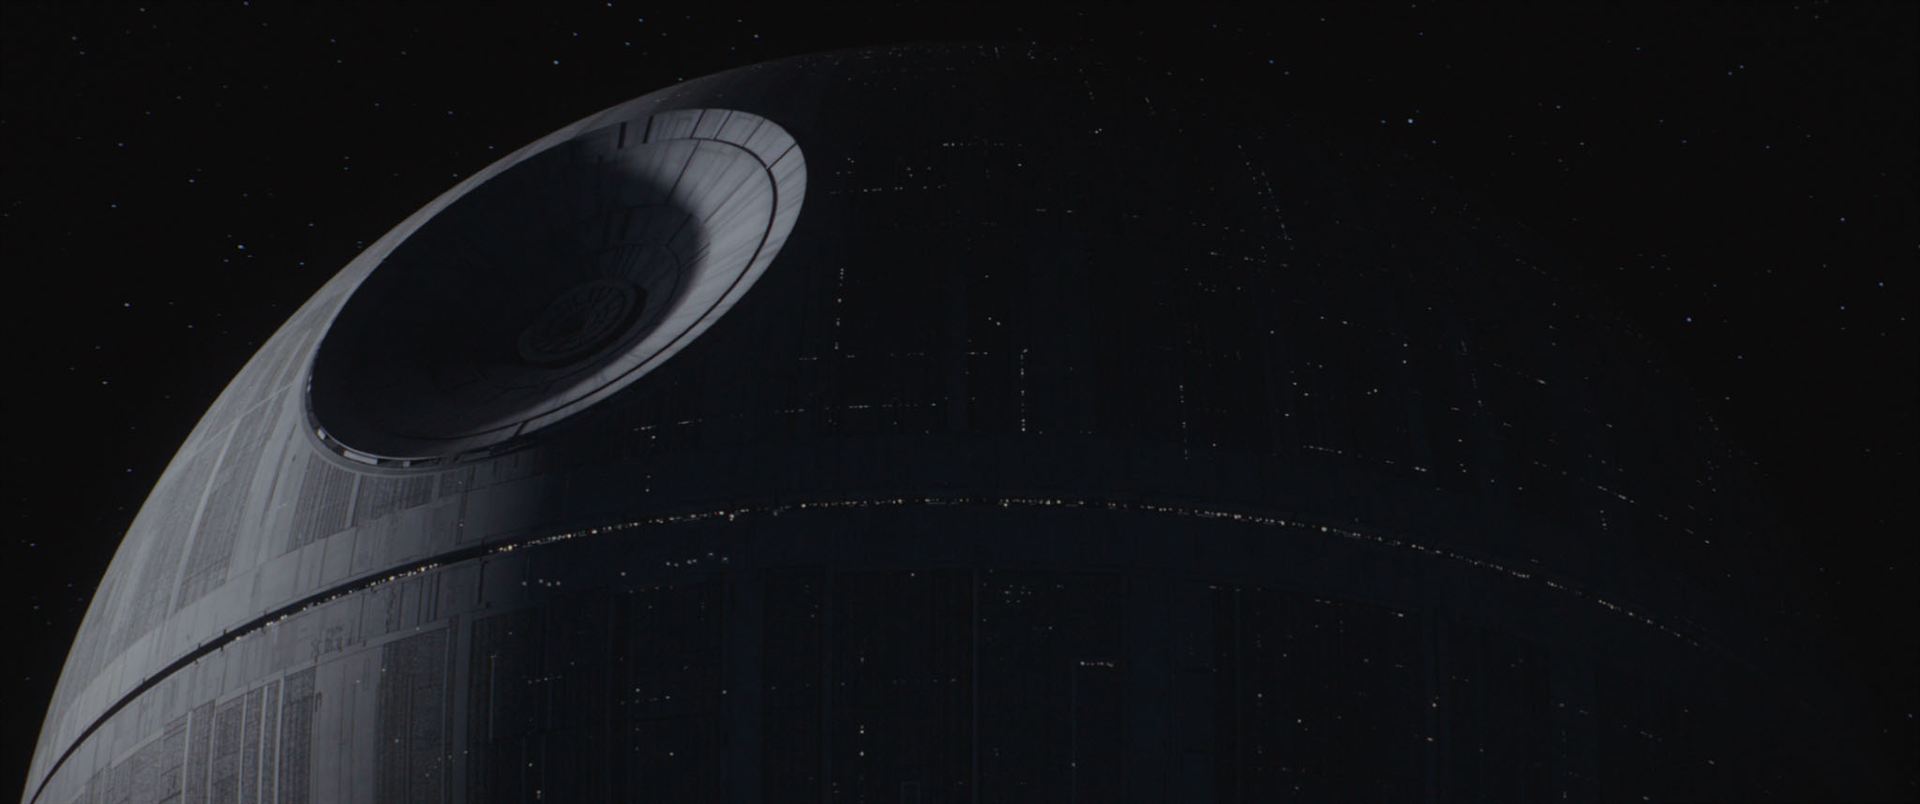 Une image tirée du film Rogue One : A Star Wars Story montrant la construction de l'Étoile de la Mort. © Lucasfilm Ltd